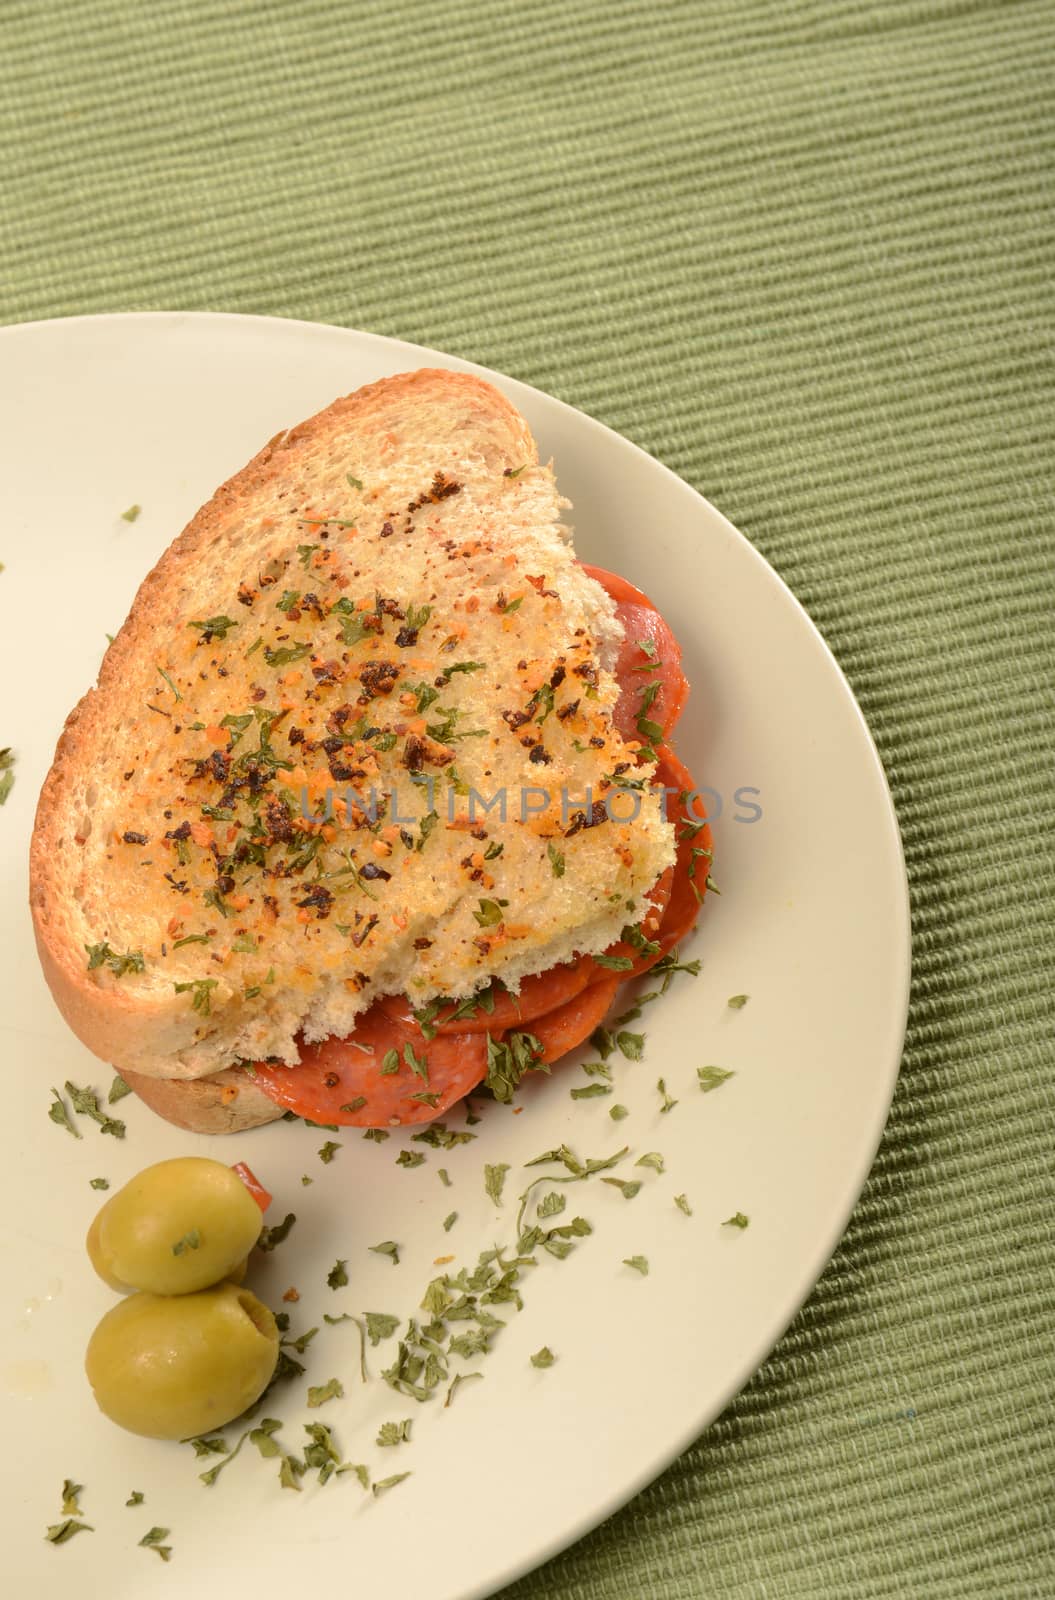 pepperoni sandwich on Italian bread